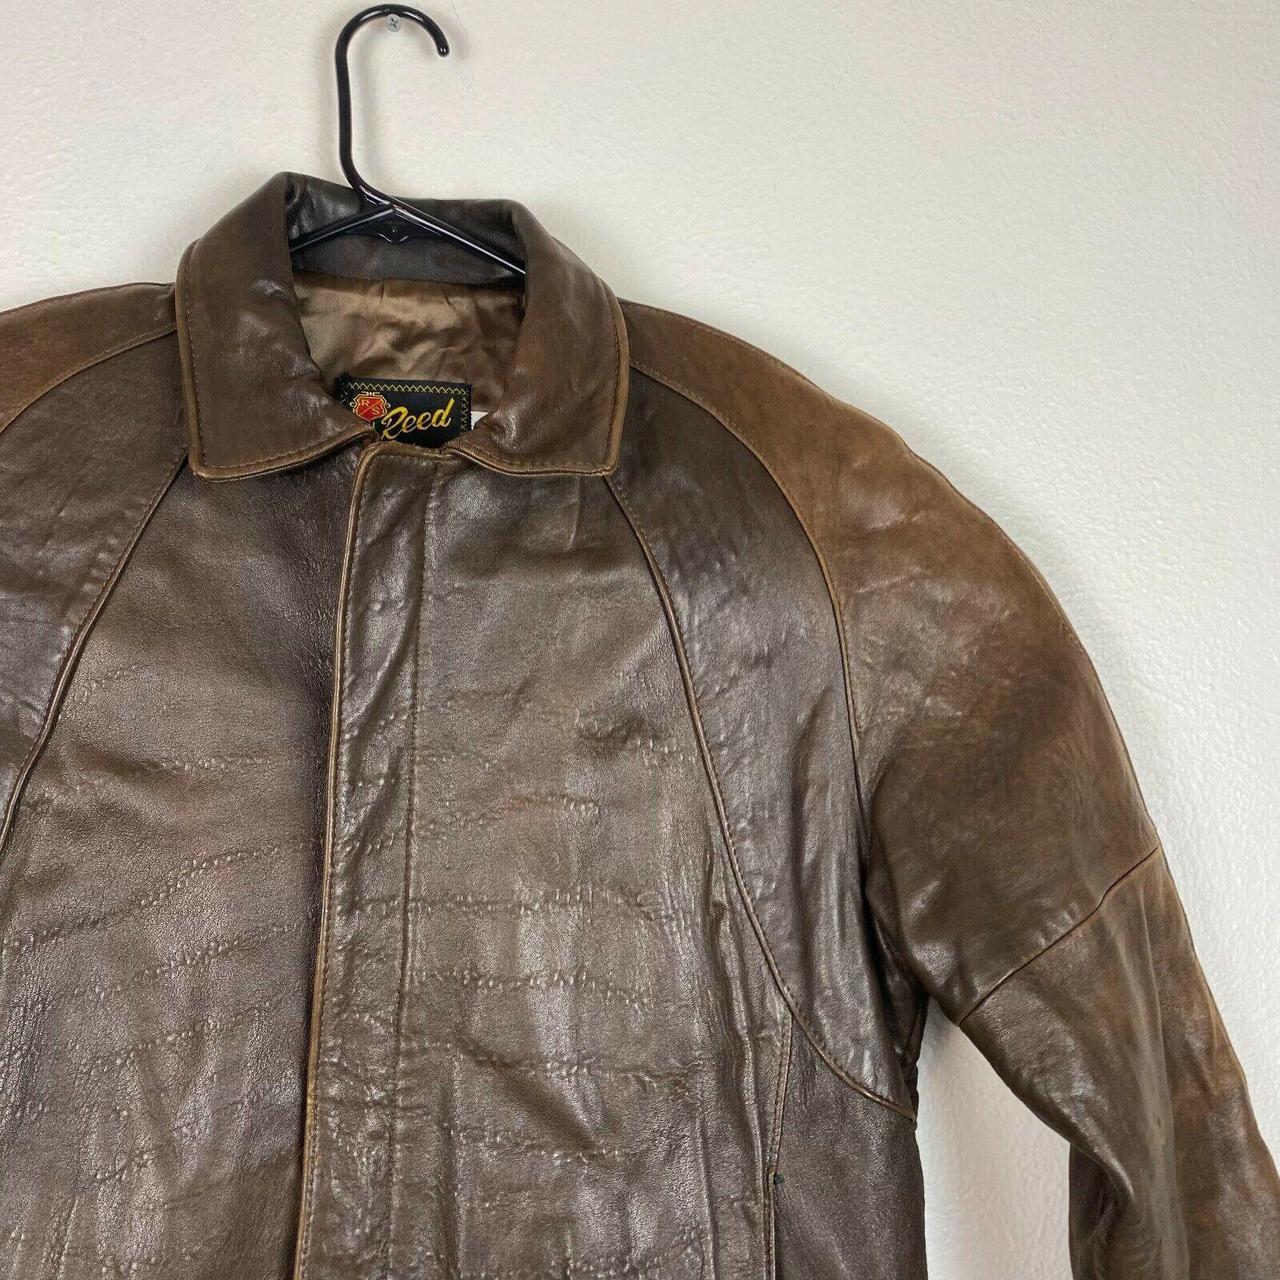 Vintage Reed Leather Bomber Jacket 90s Brown Full... - Depop